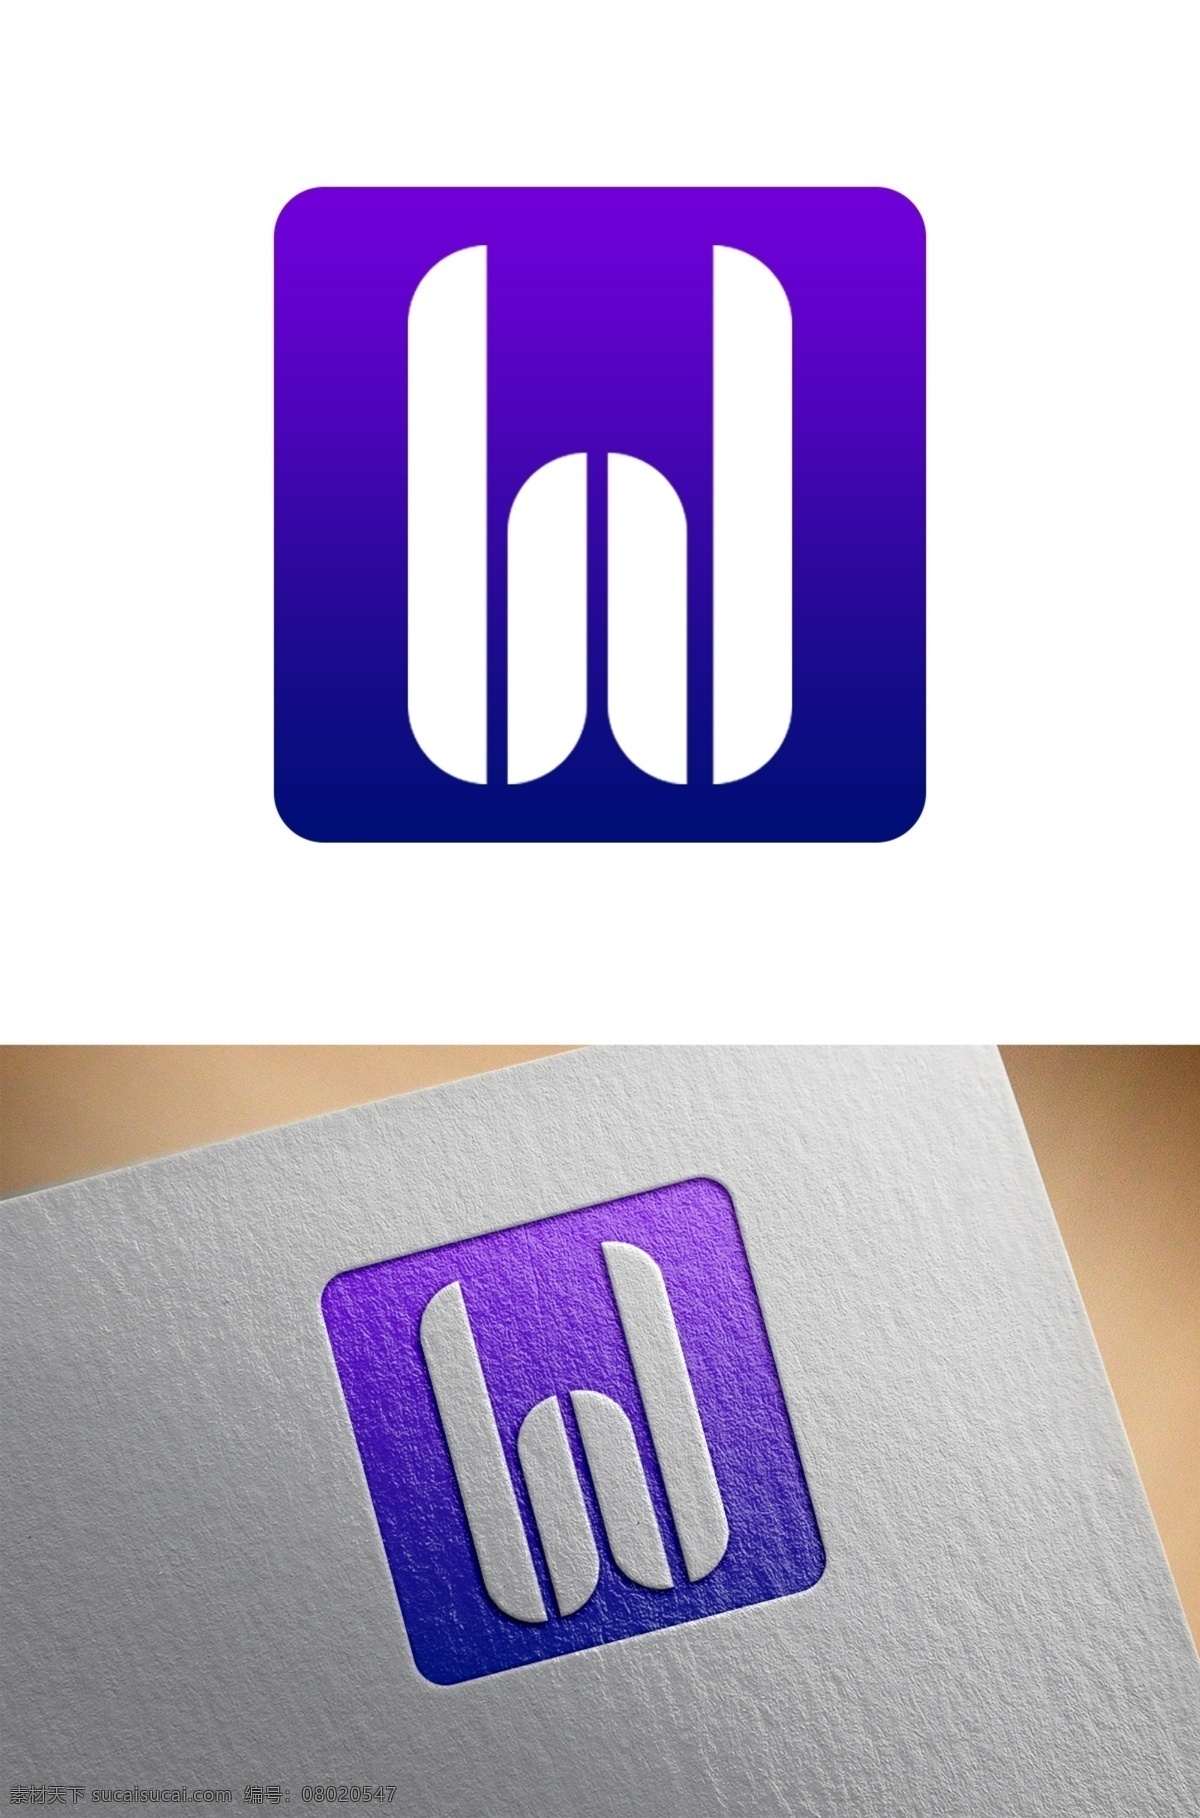 字母 图形设计 logo 图形 标志 图标 企业 公司 w 商标